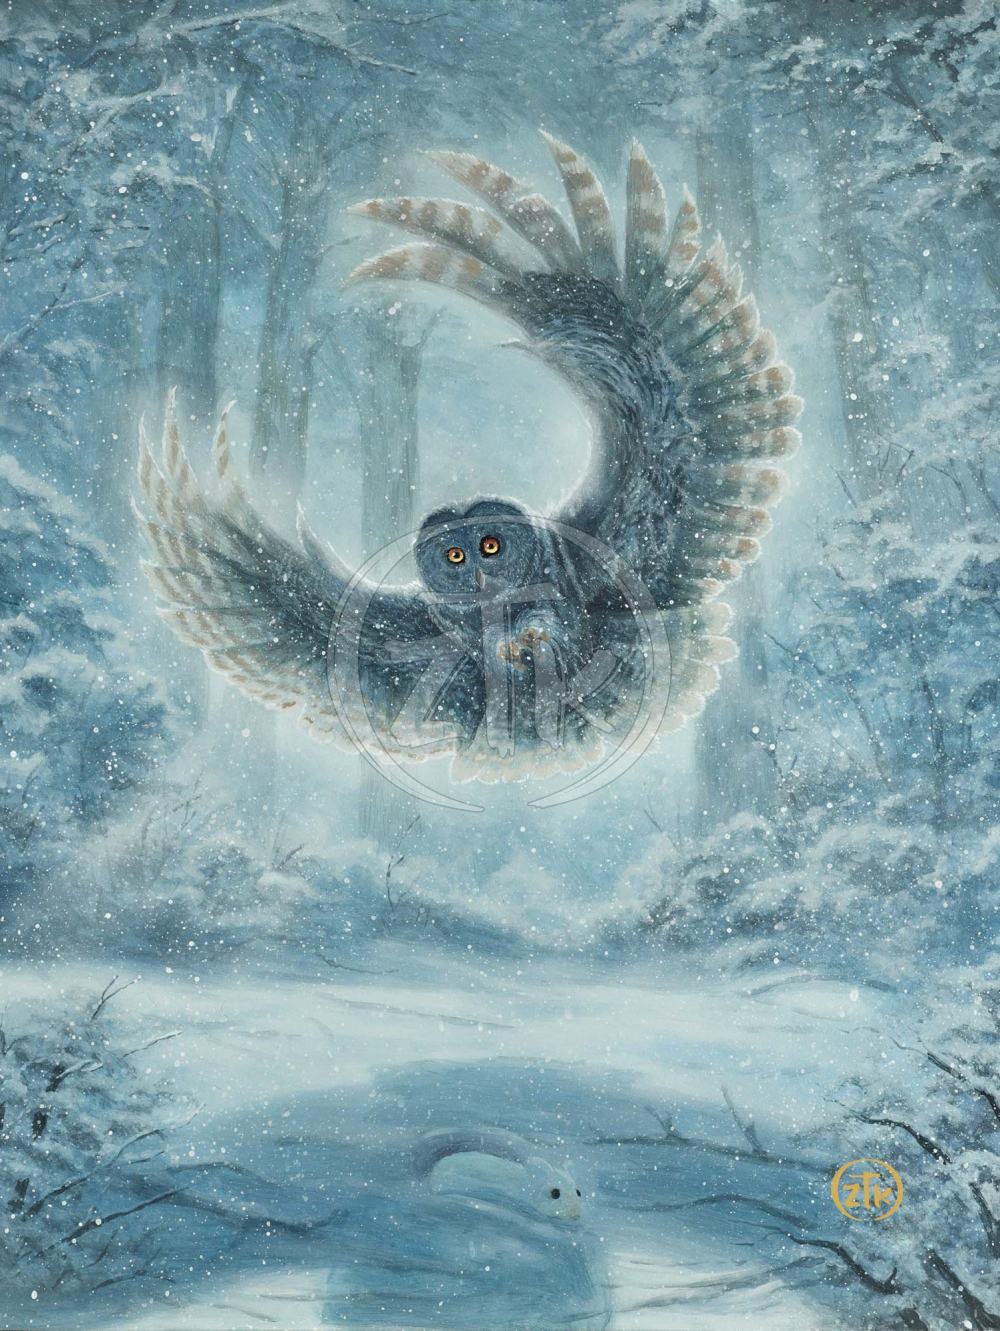 Snowy Owl Painting By Zac Kinkade